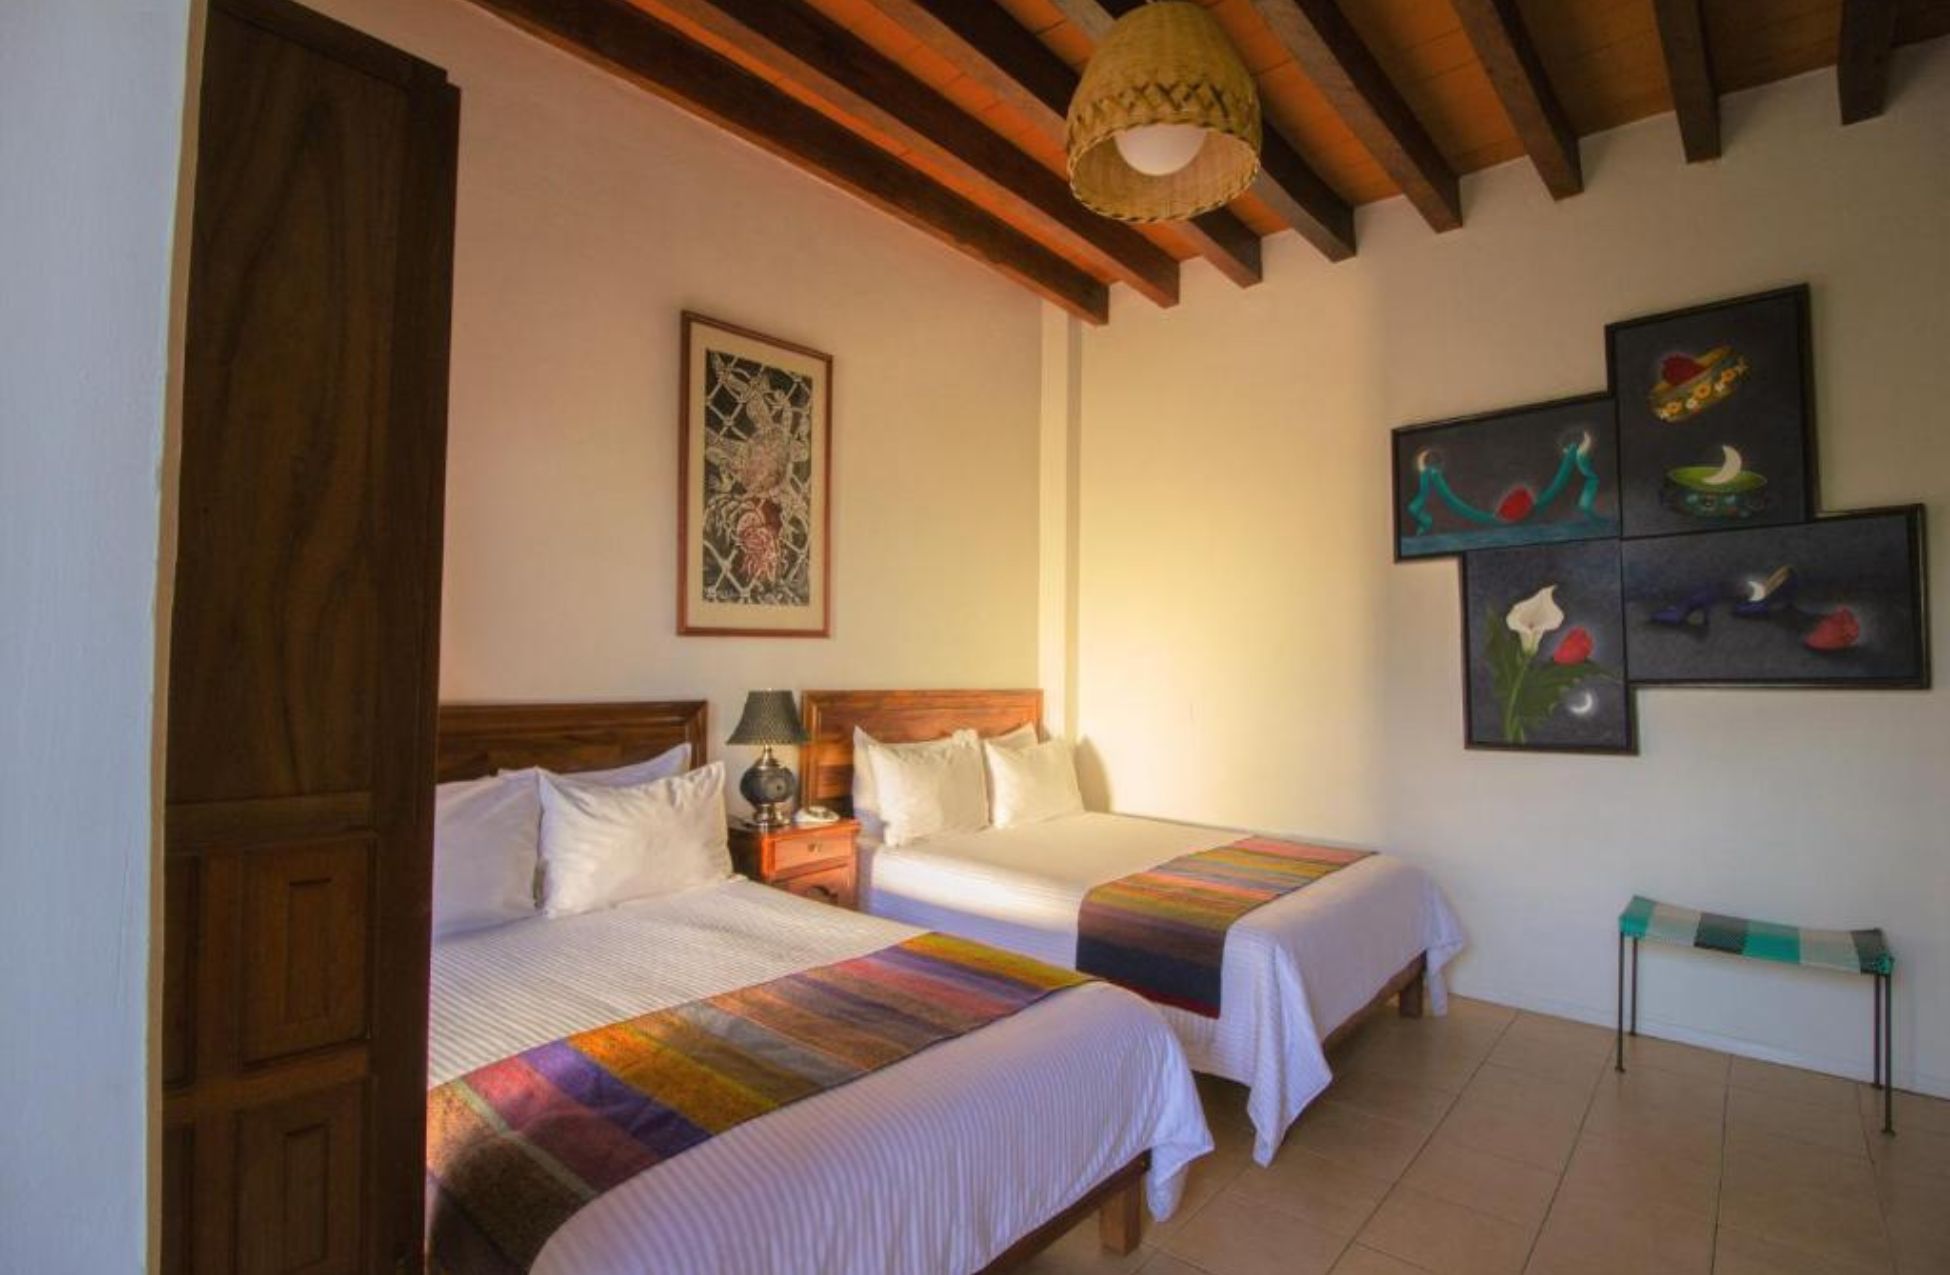 Nana Vida Hotel Oaxaca - Best Hotels In Oaxaca